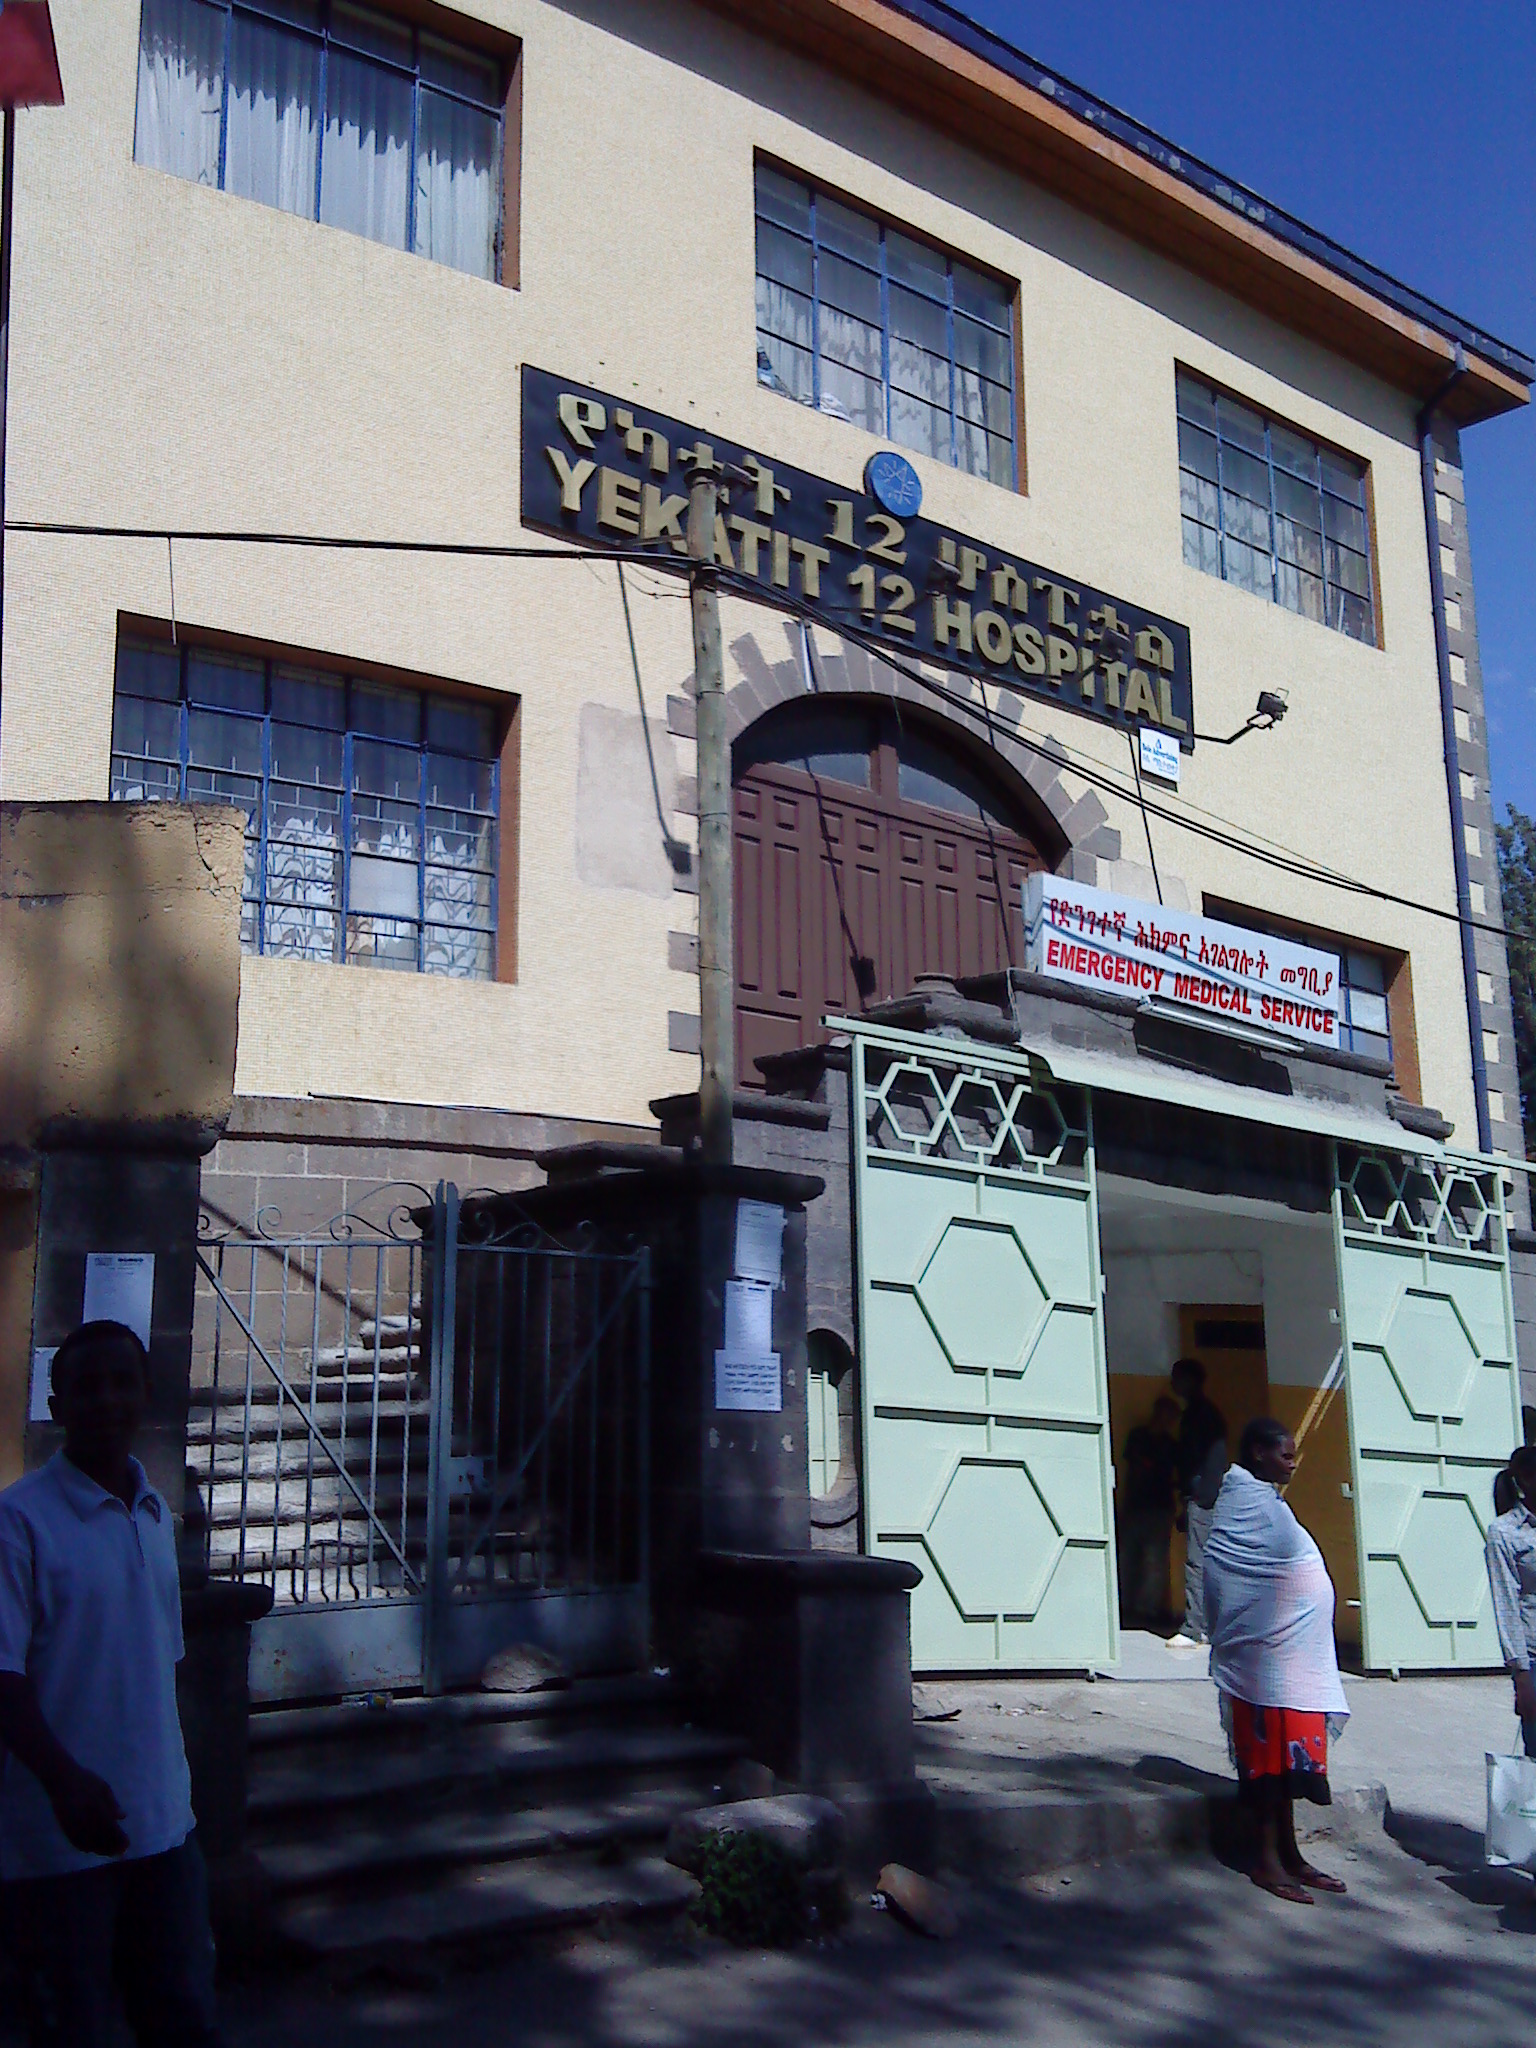 Yekatit 12 Hospital_Ethiopia